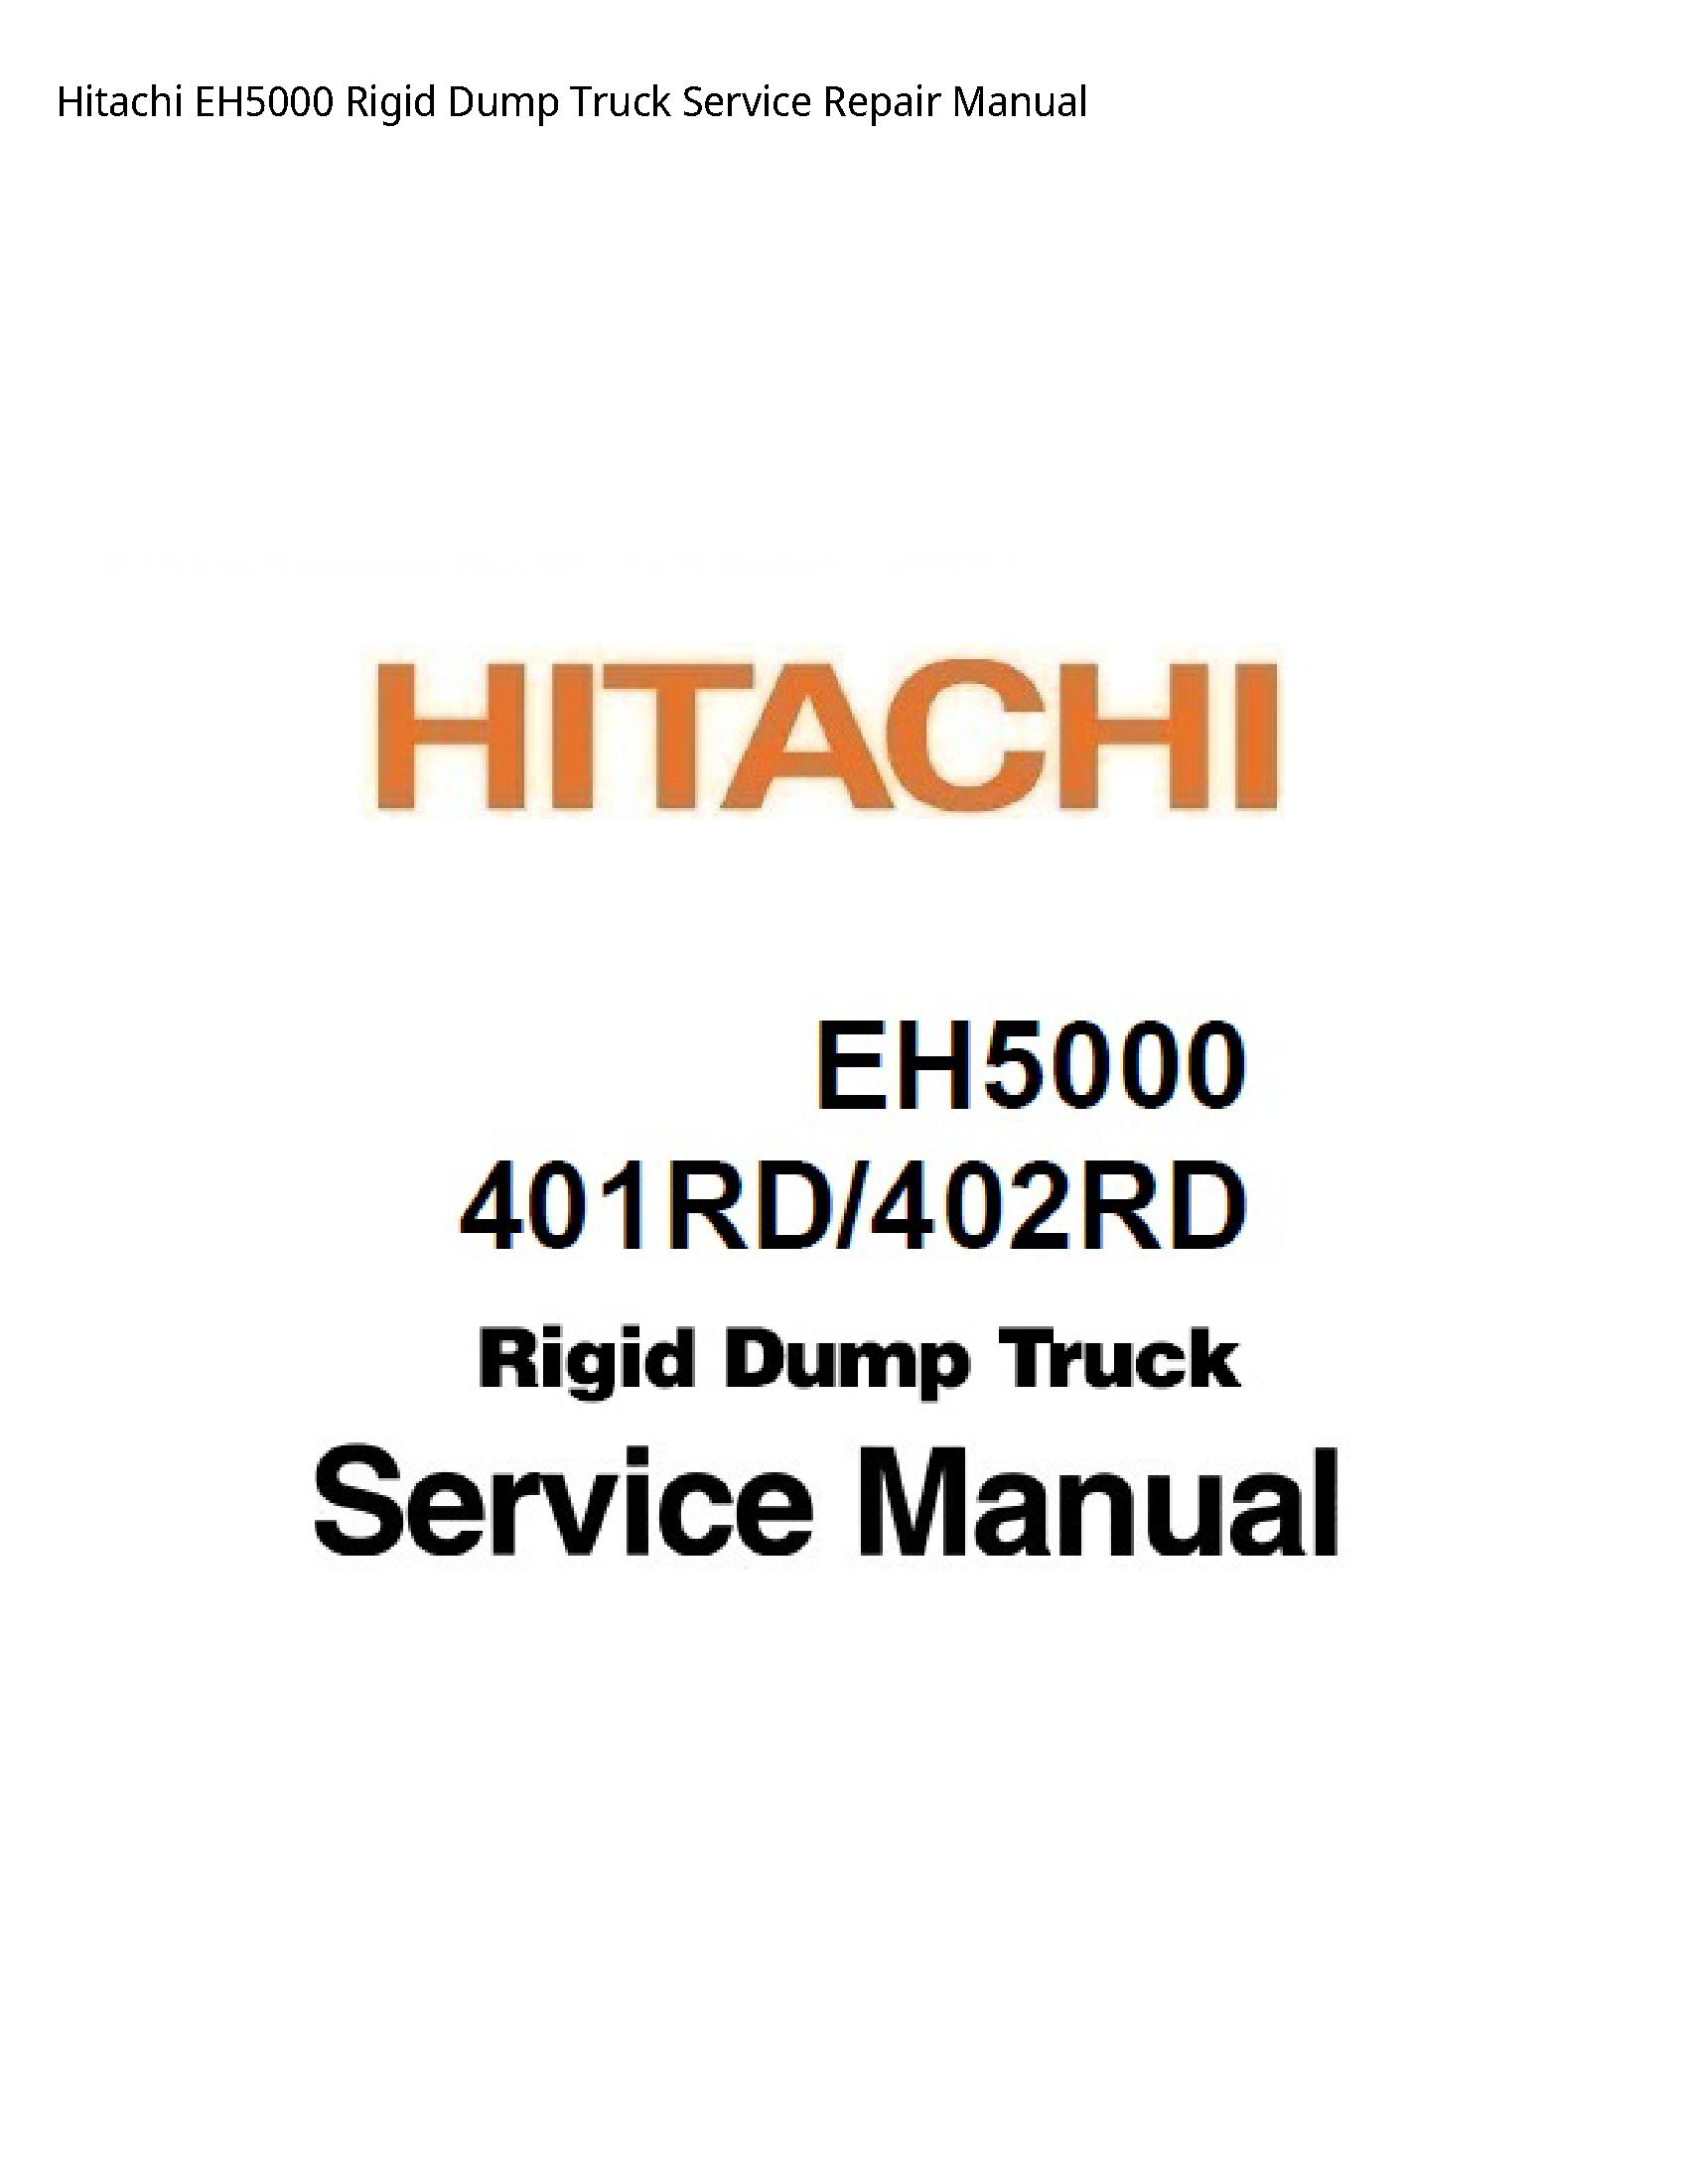 Hitachi EH5000 Rigid Dump Truck manual